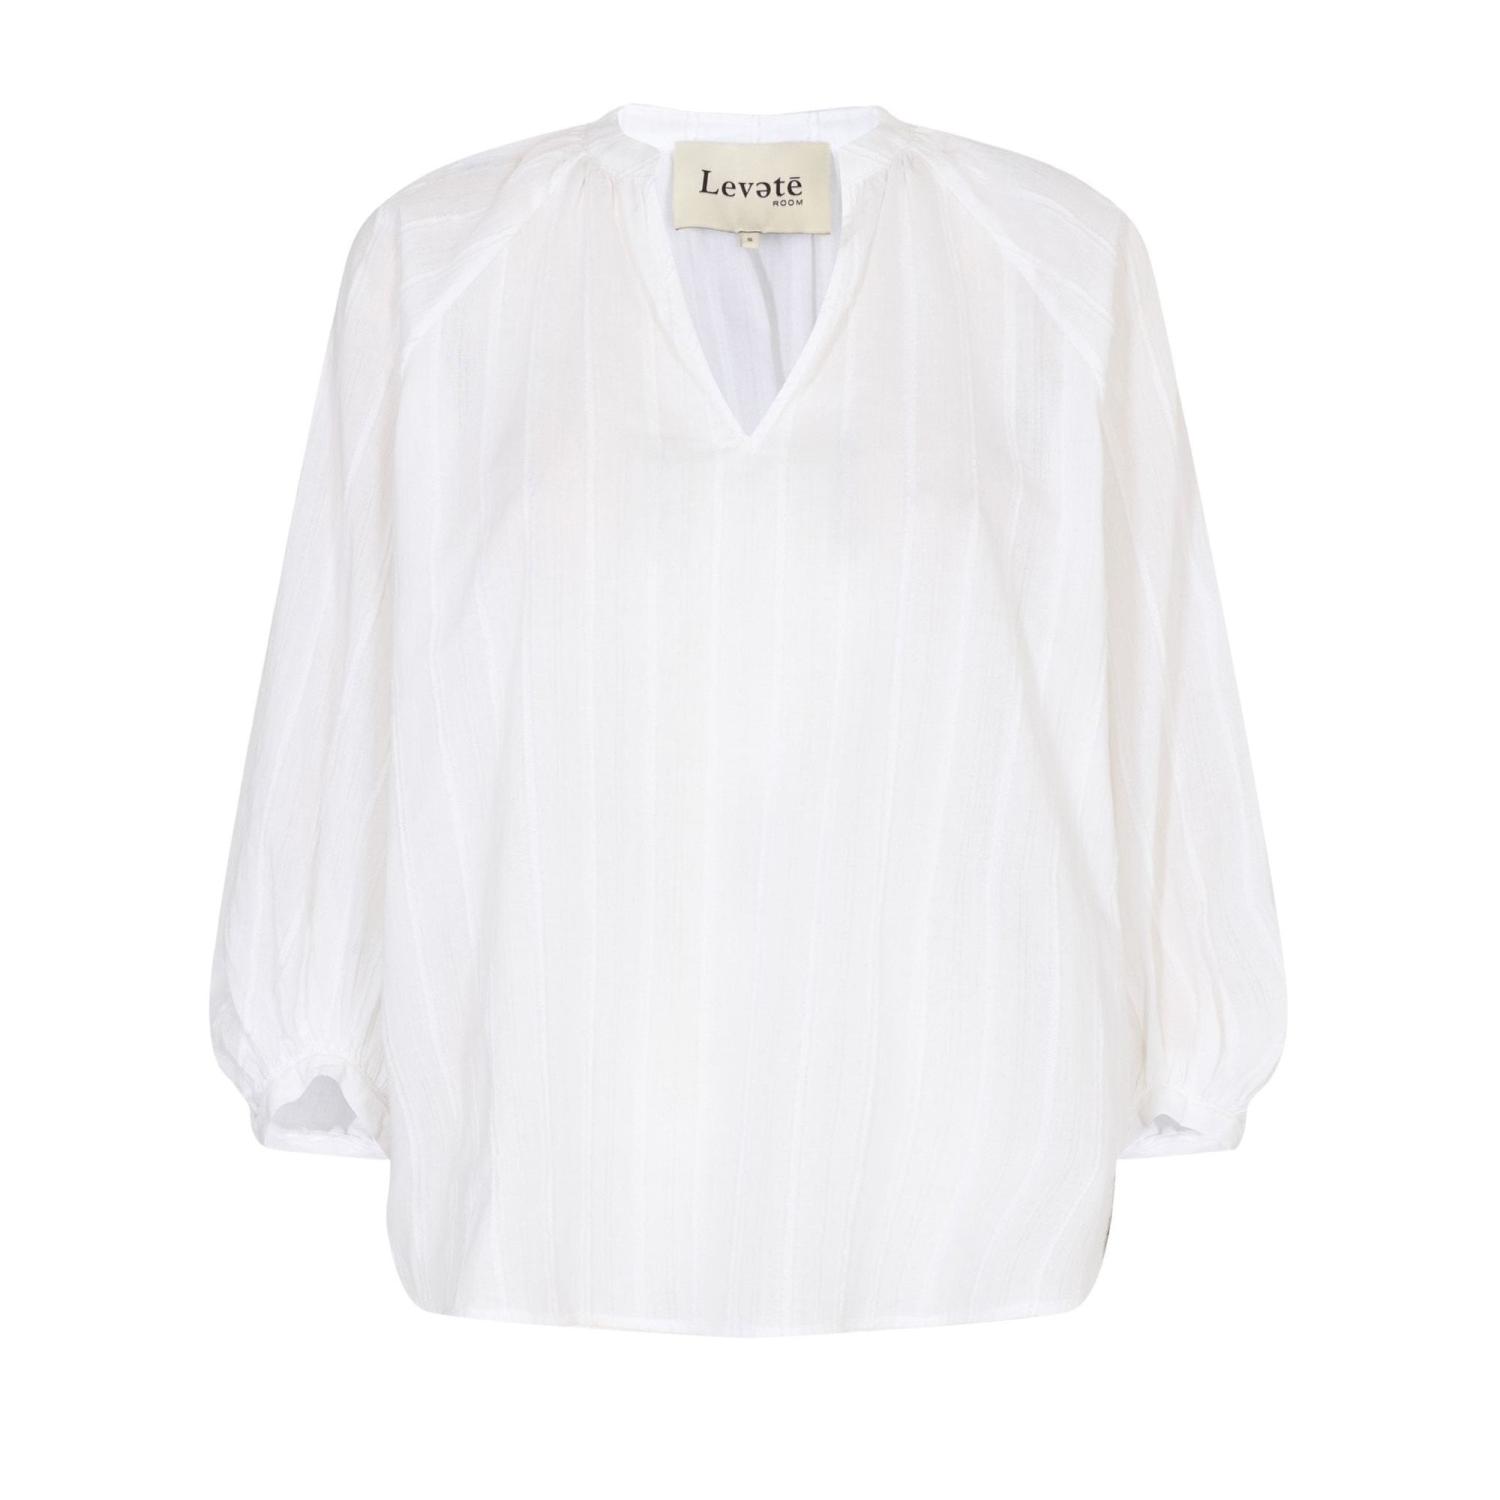 LR-Sam 1 Shirt White